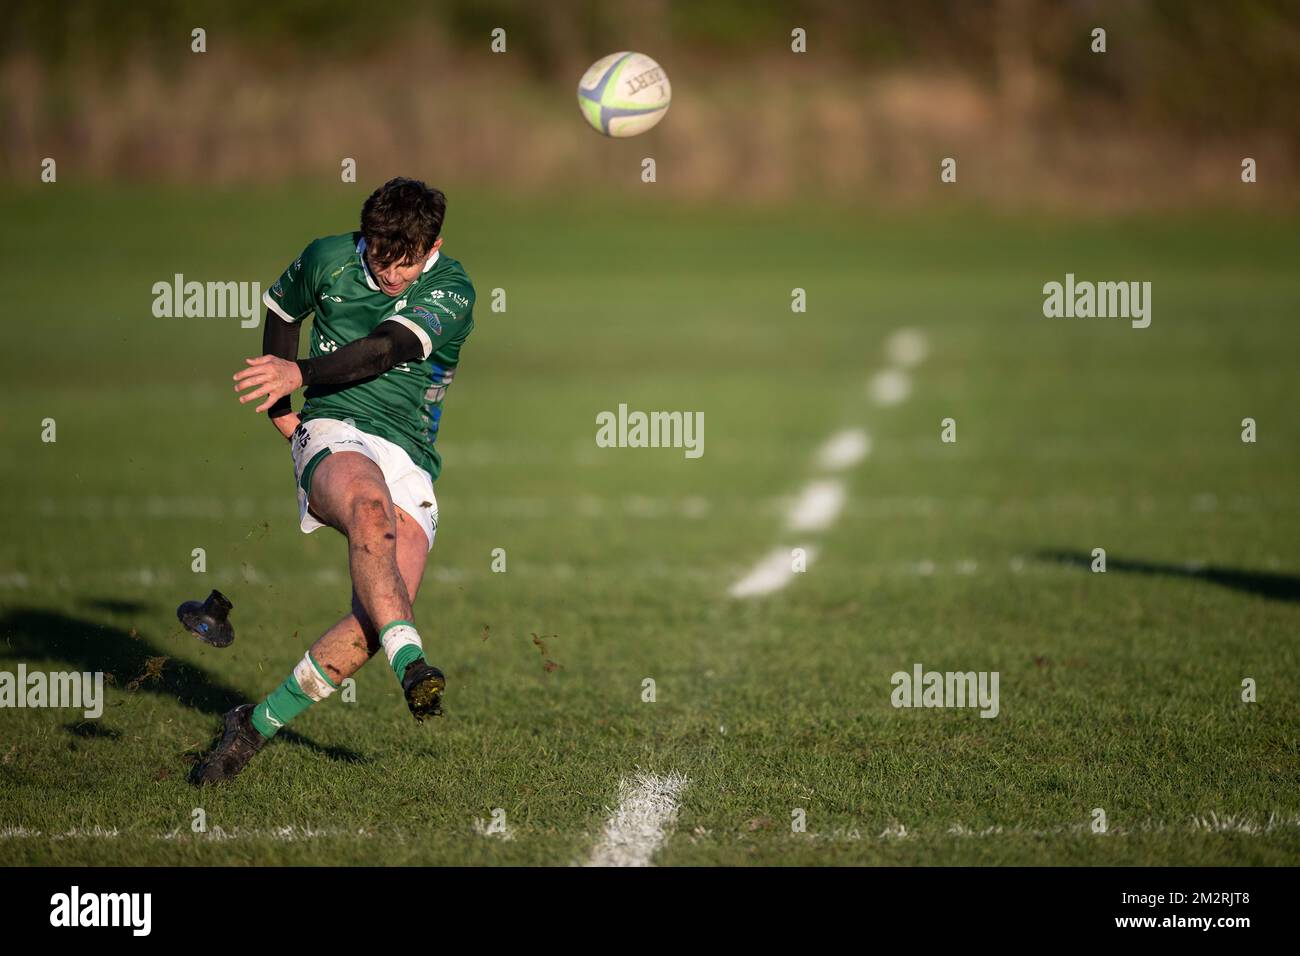 Joueur de rugby convertissant le coup de pied Banque D'Images